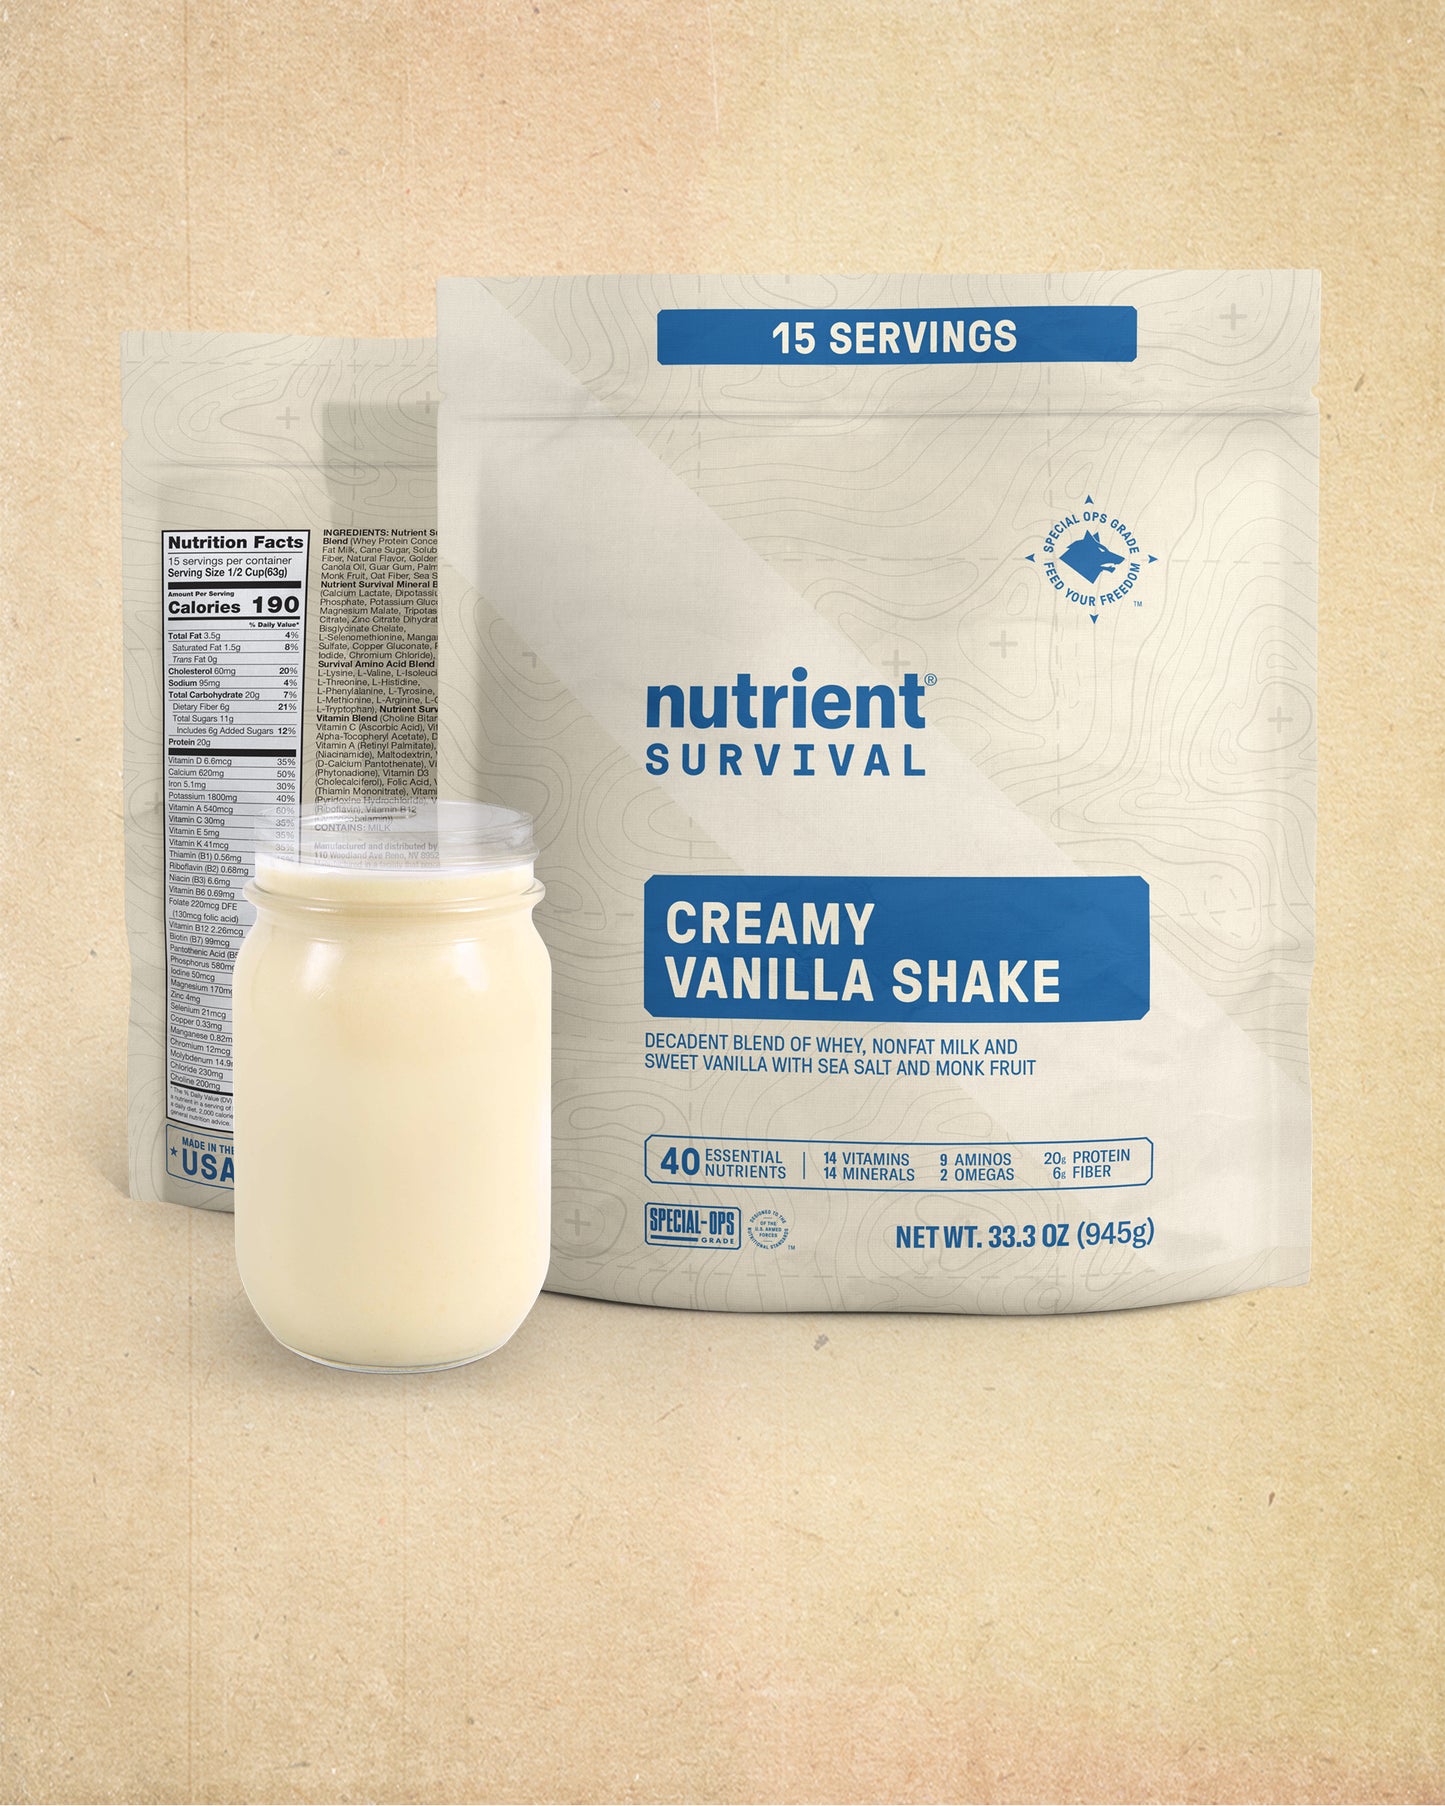 Creamy Vanilla Shake Pantry Pack